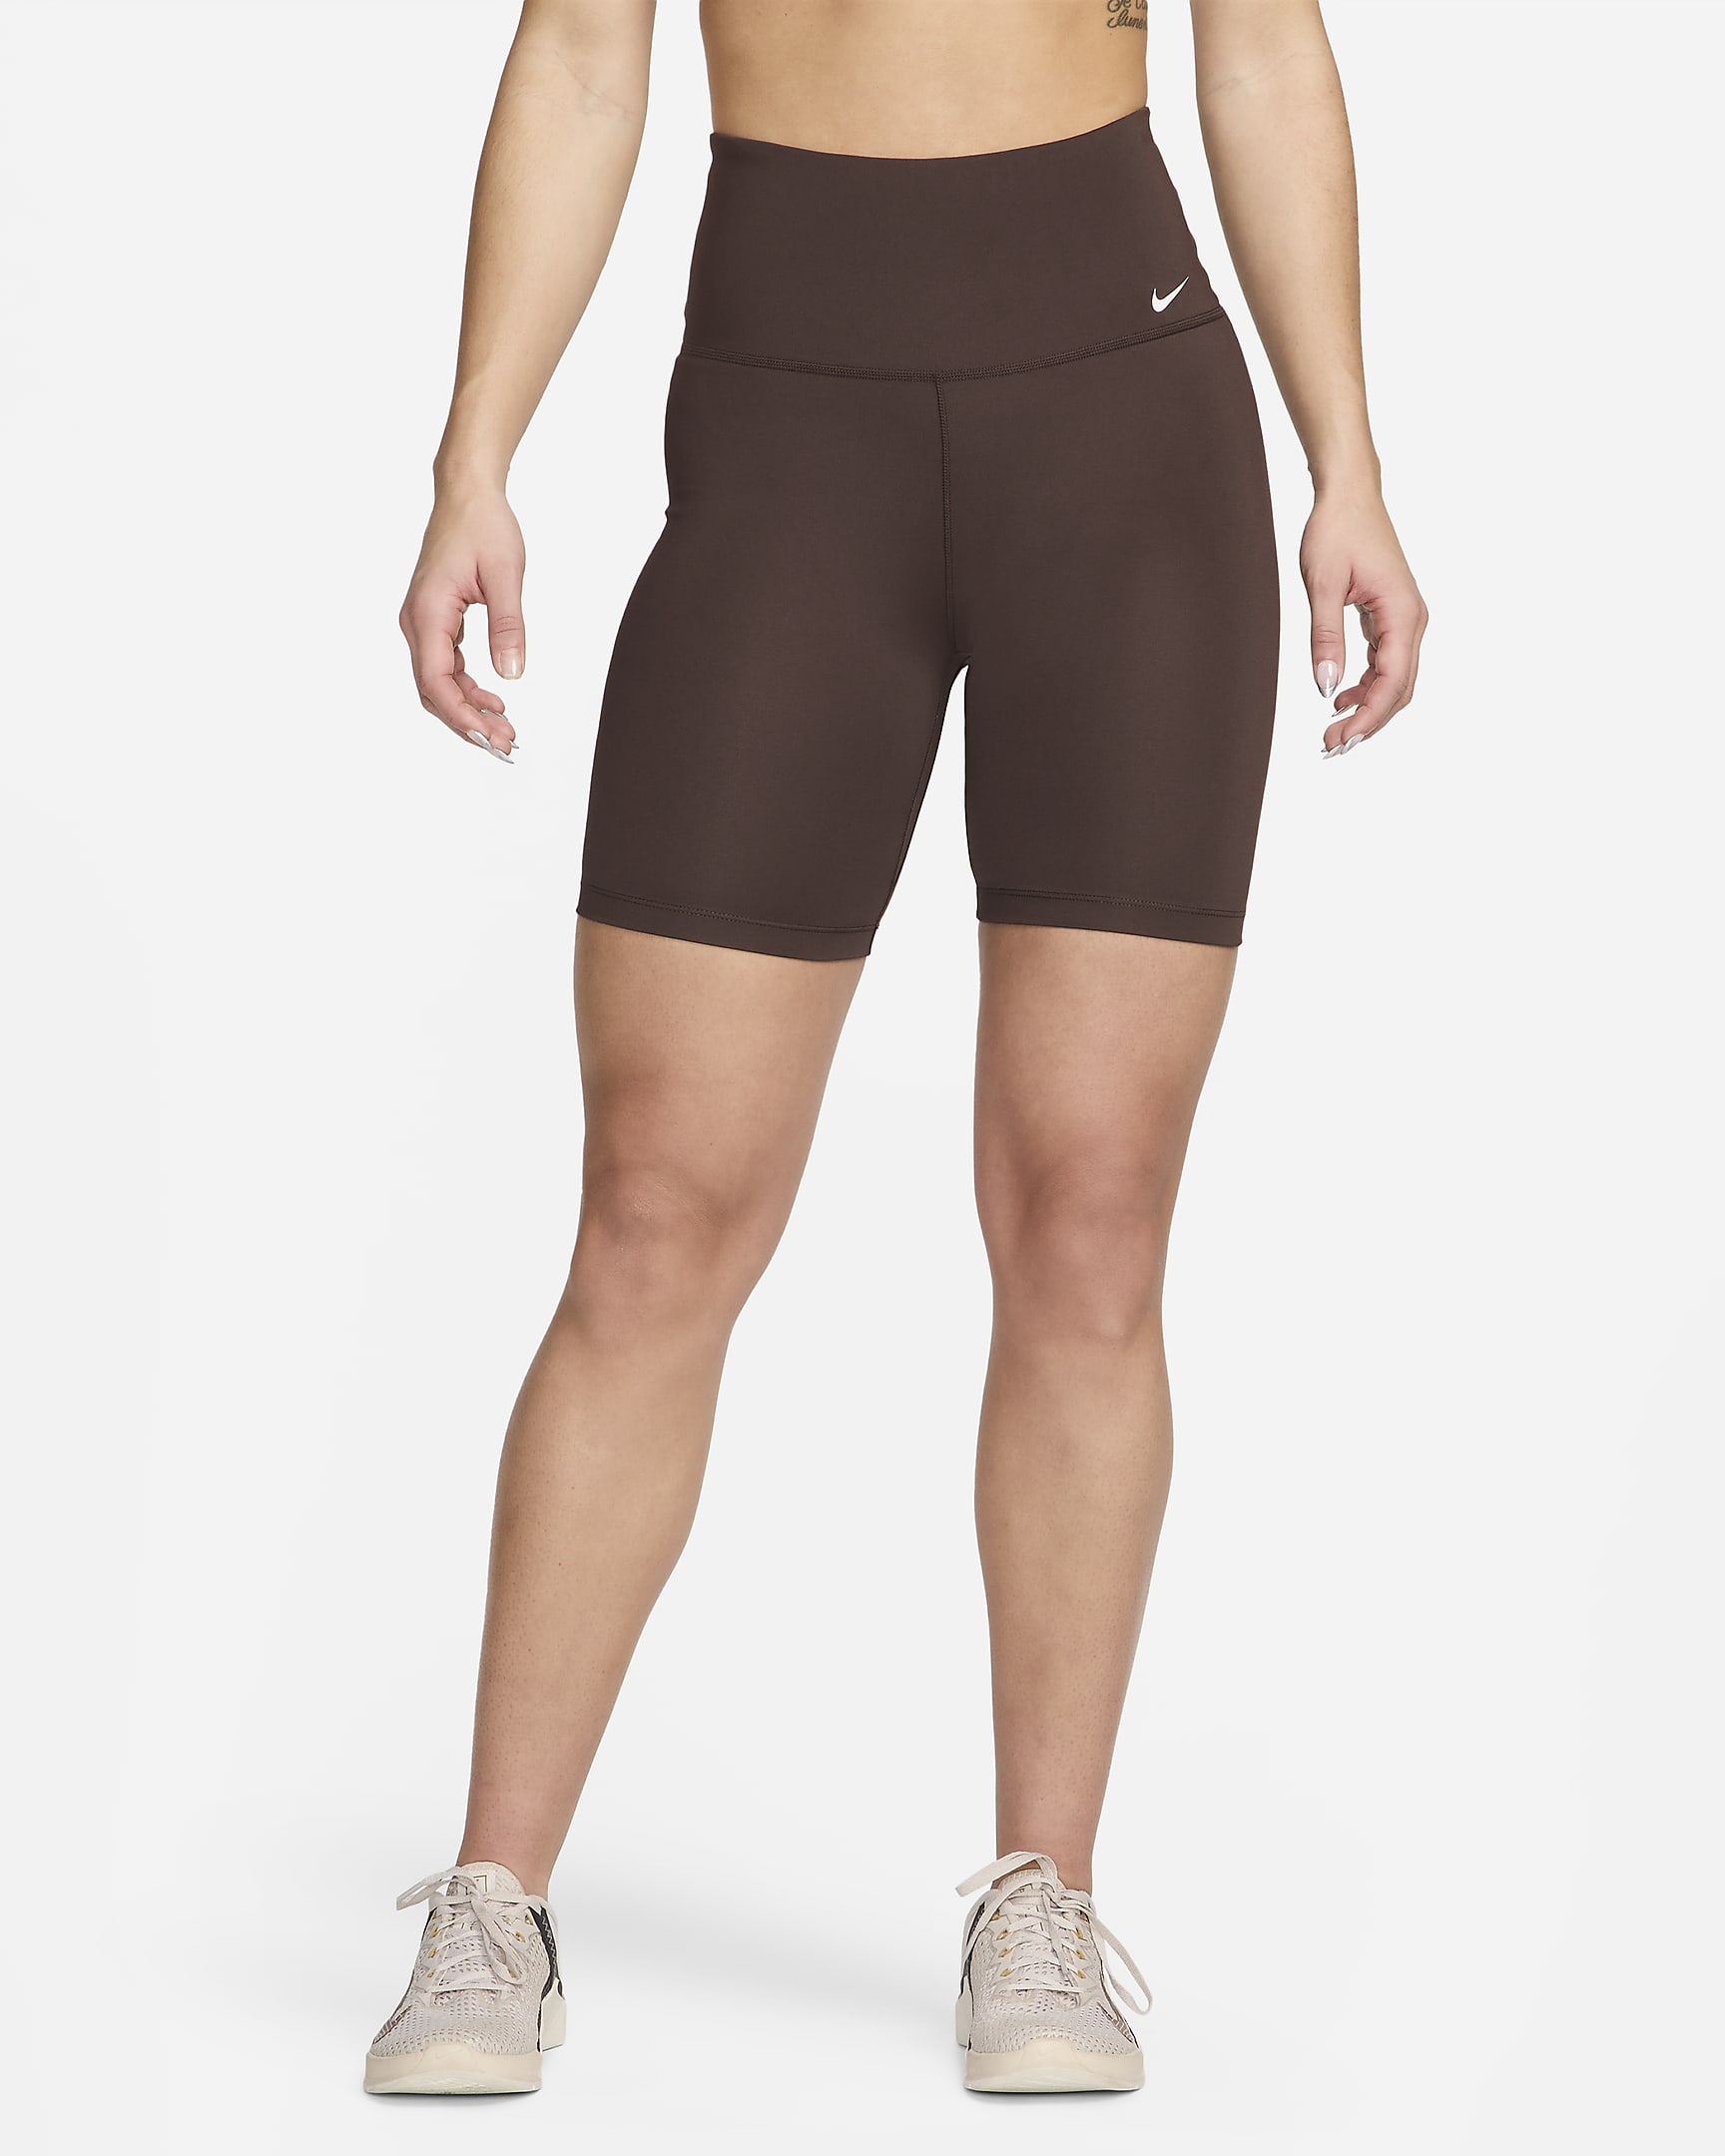 Nike Dri-FIT One Women's High-Waisted 18cm (approx.) Biker Shorts. Nike BG